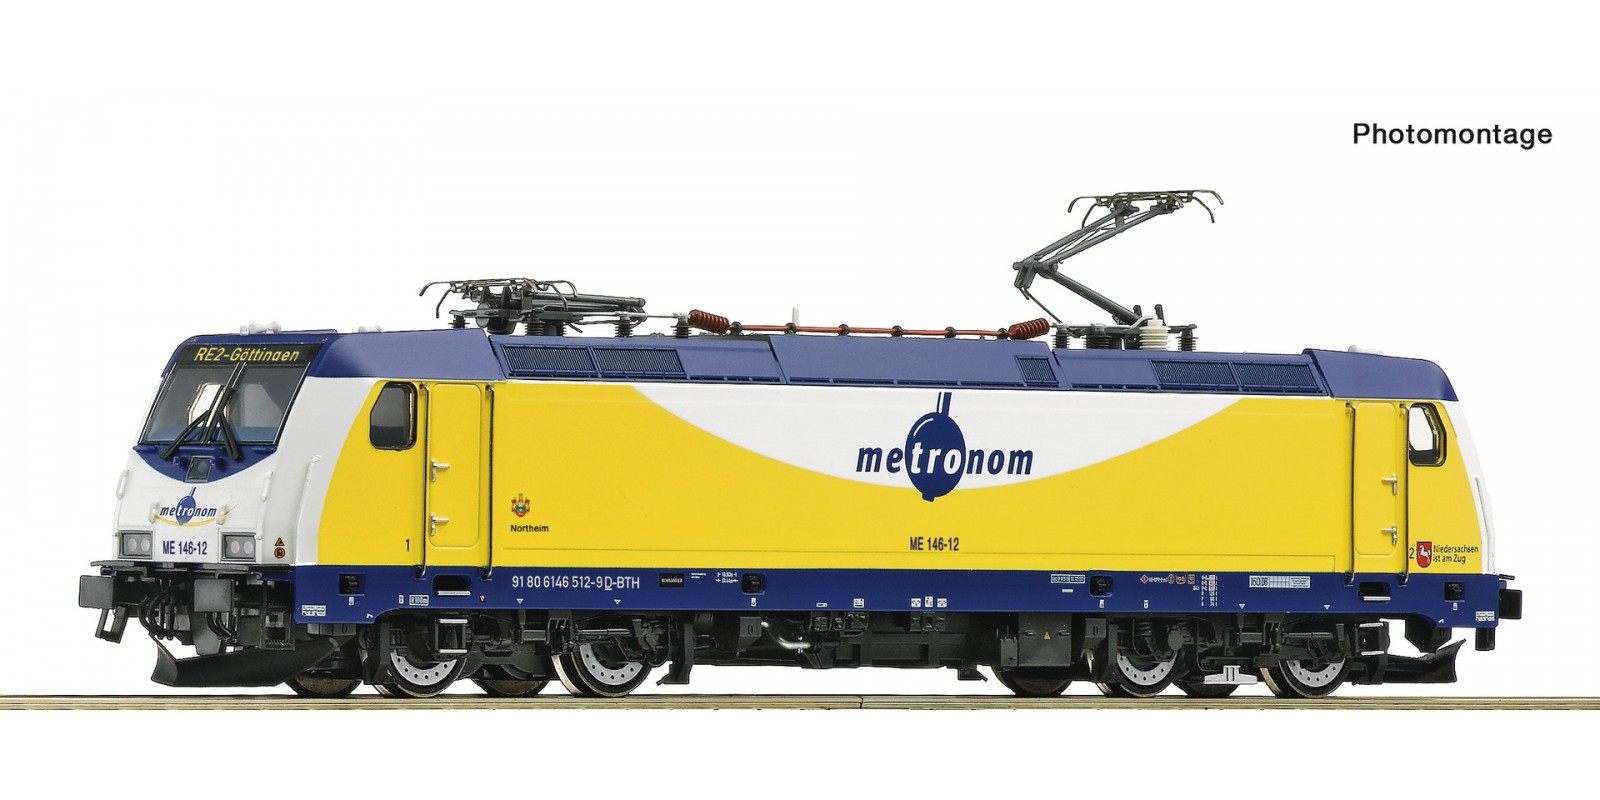 RO7510037 Electric locomotive ME 14 6-12, metronom           